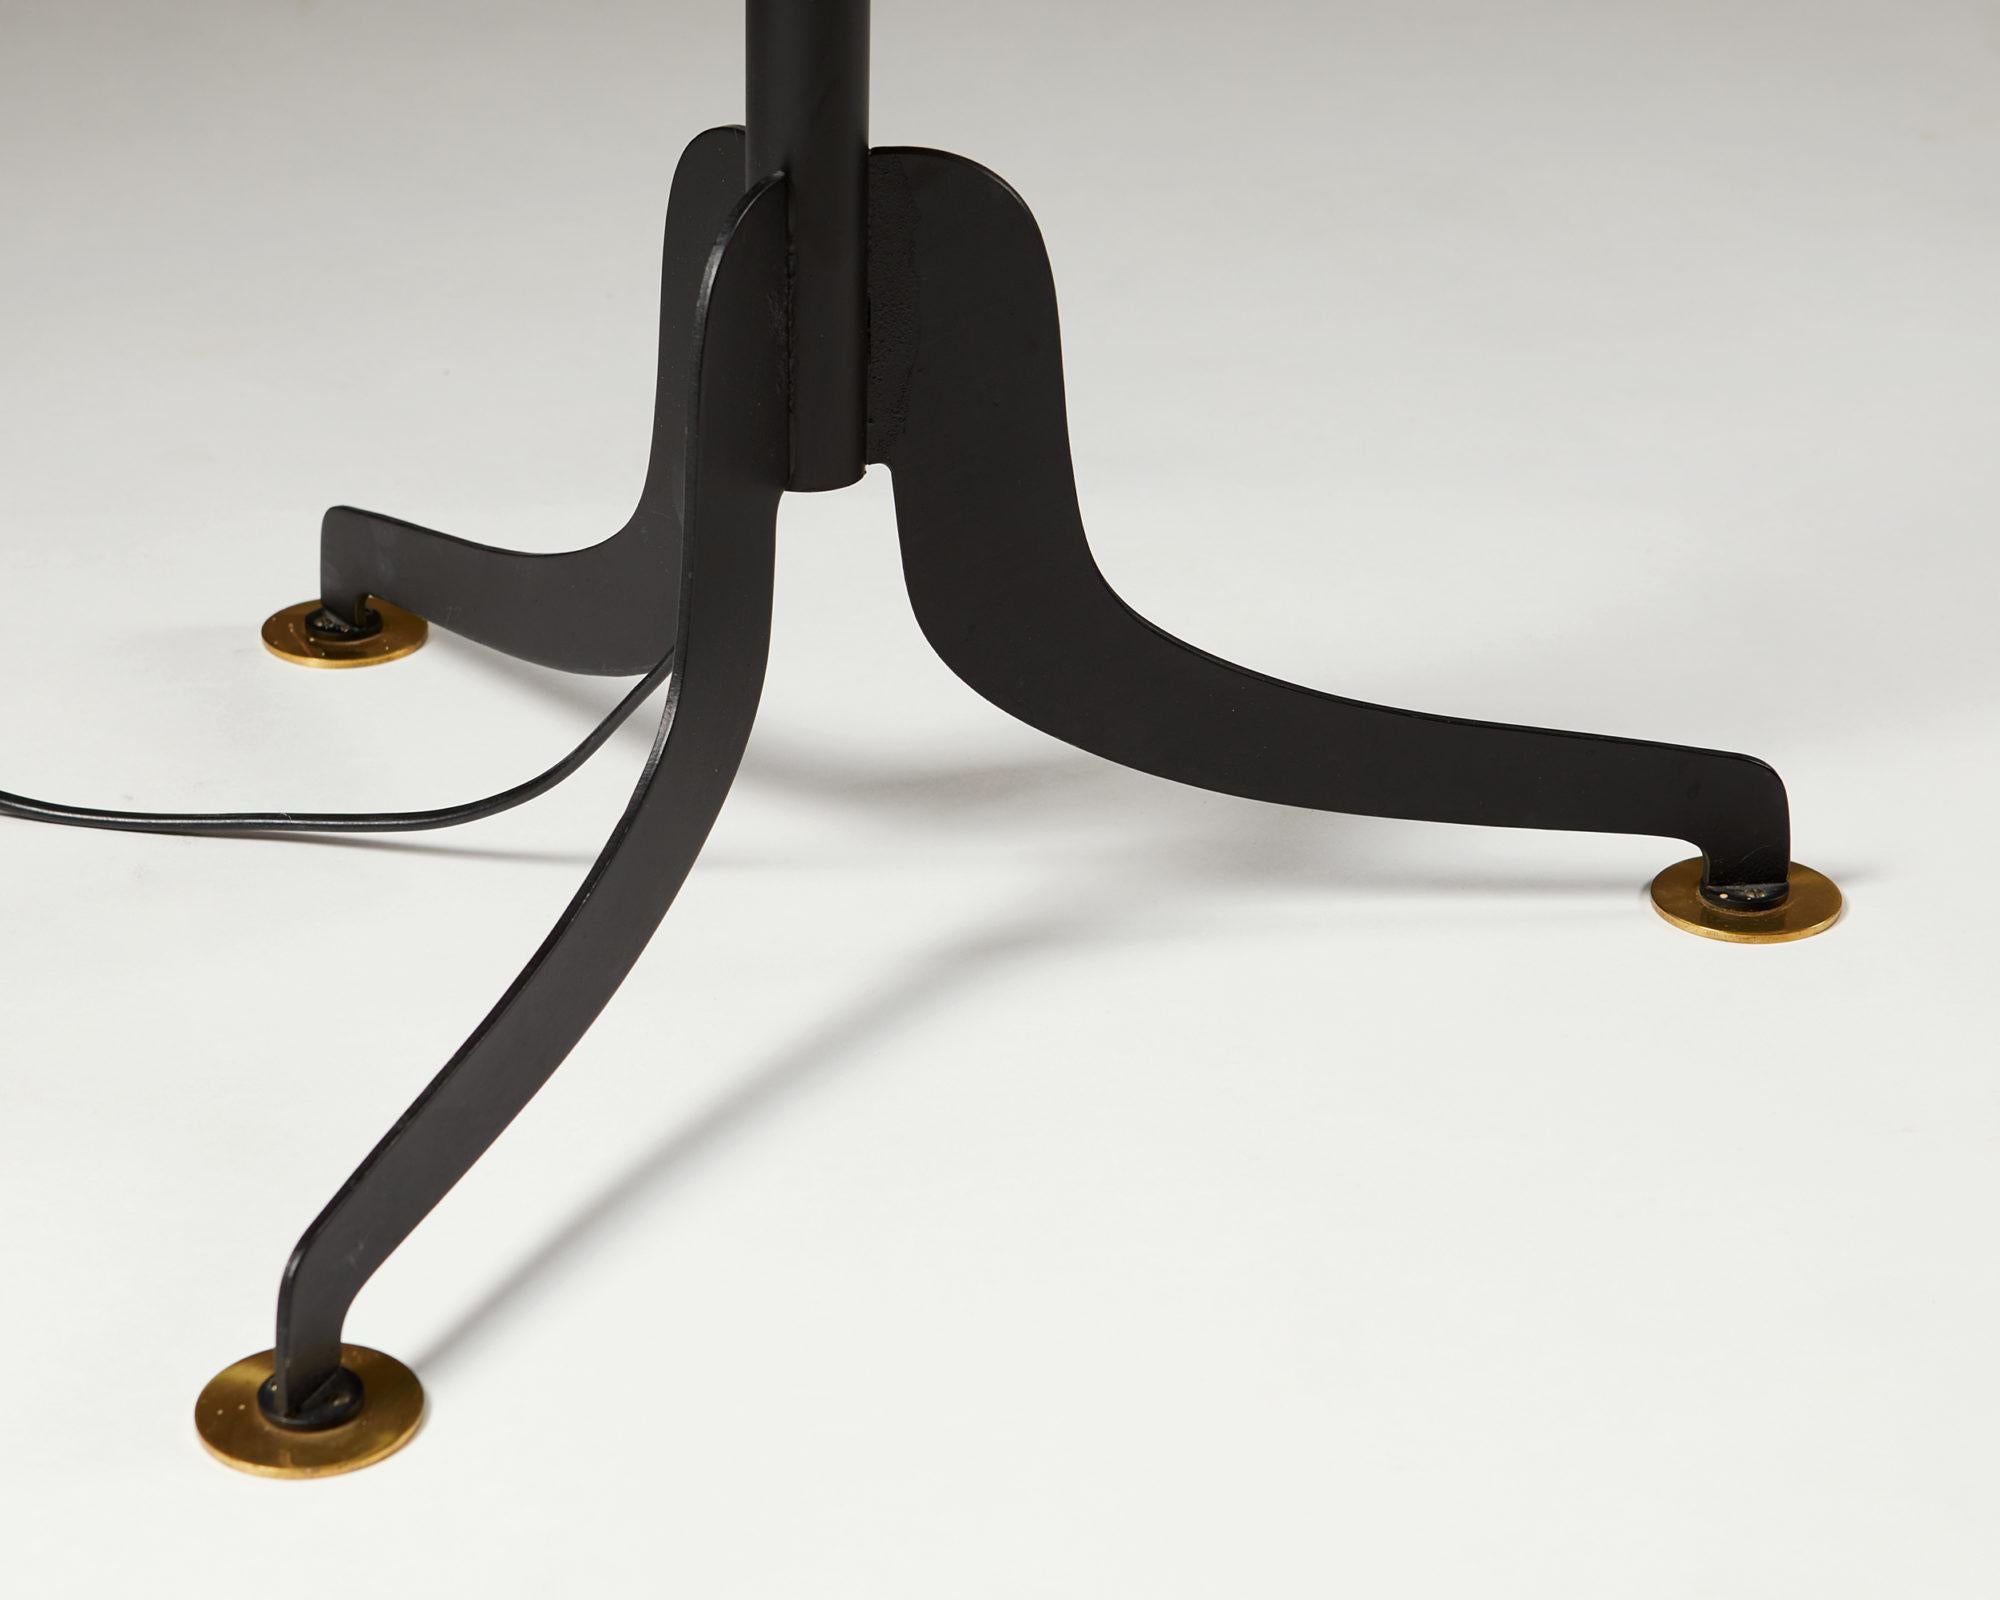 Scandinavian Modern Floor Lamp Model 2597 Designed by Josef Frank for Svenskt Tenn